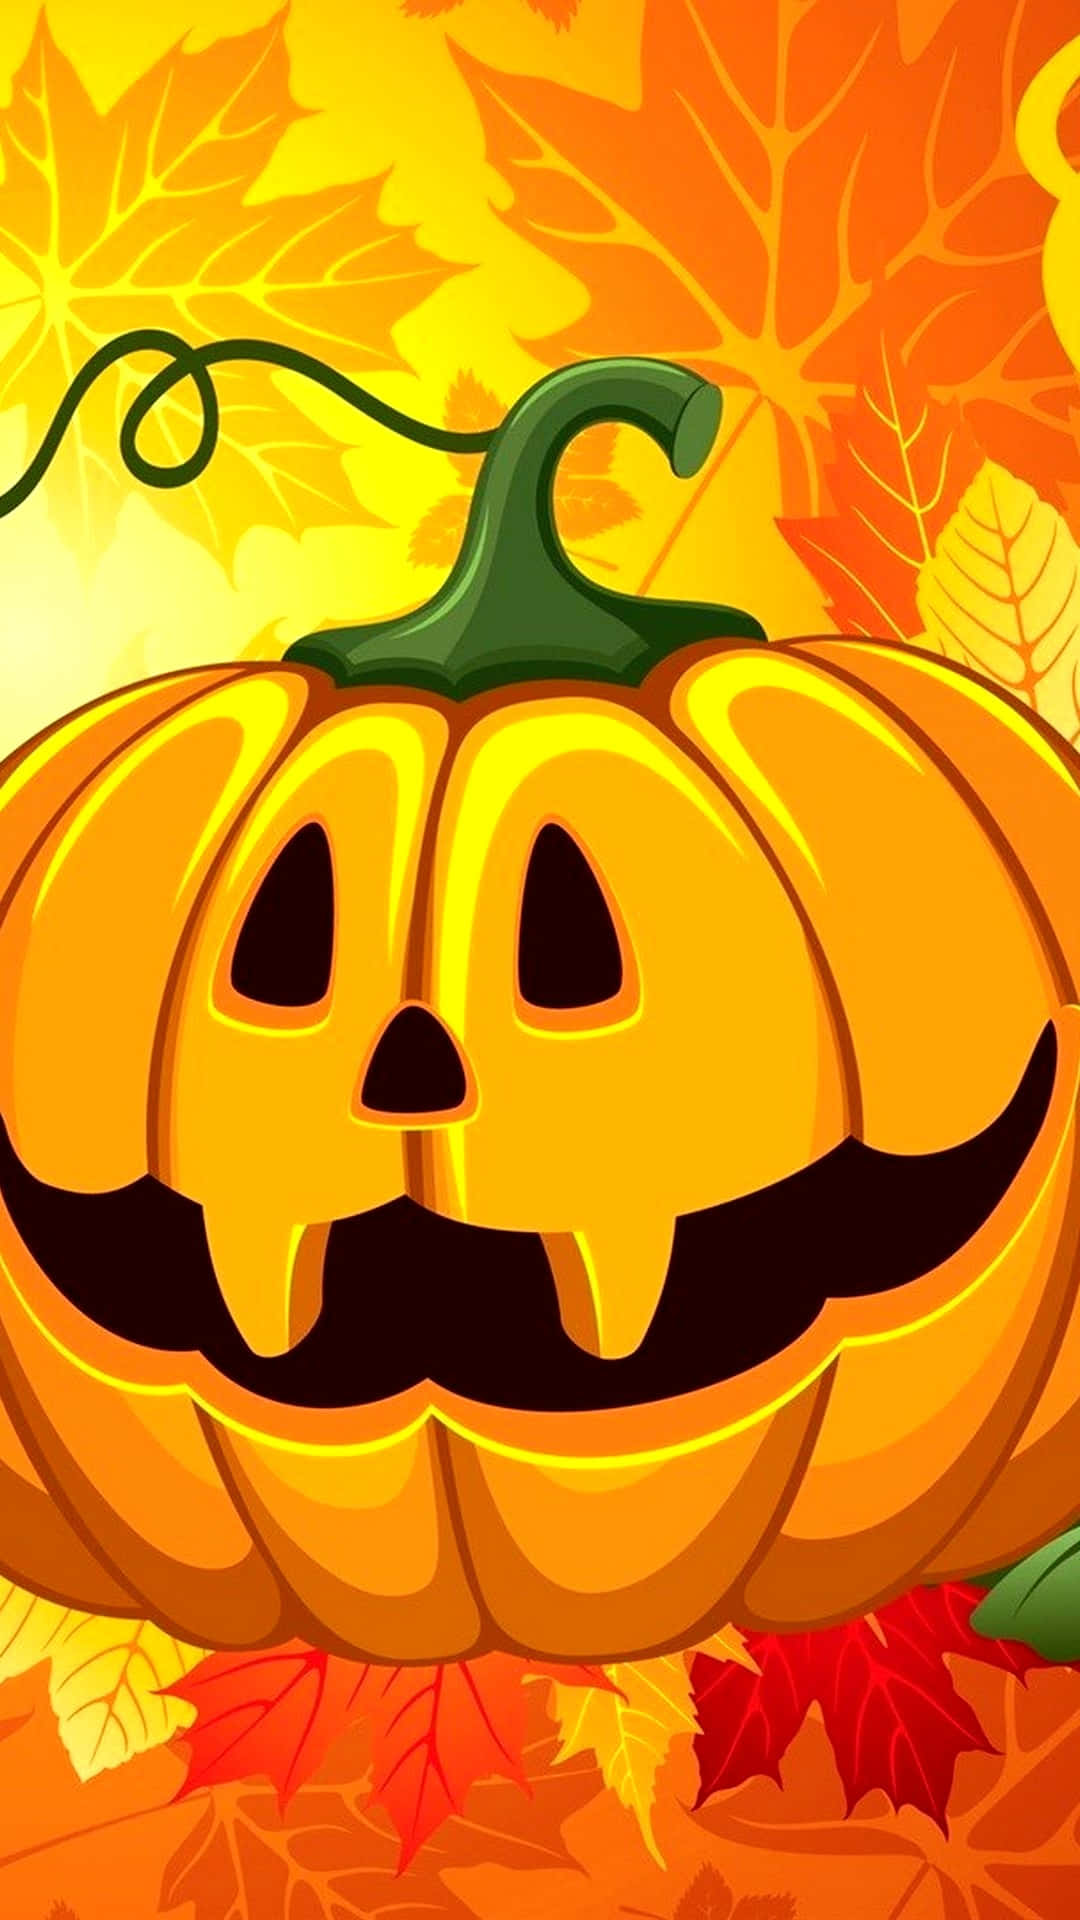 Fondode Pantalla De Halloween Para Iphone Con Imagen De Jack O'lantern Y Hojas De Arce.